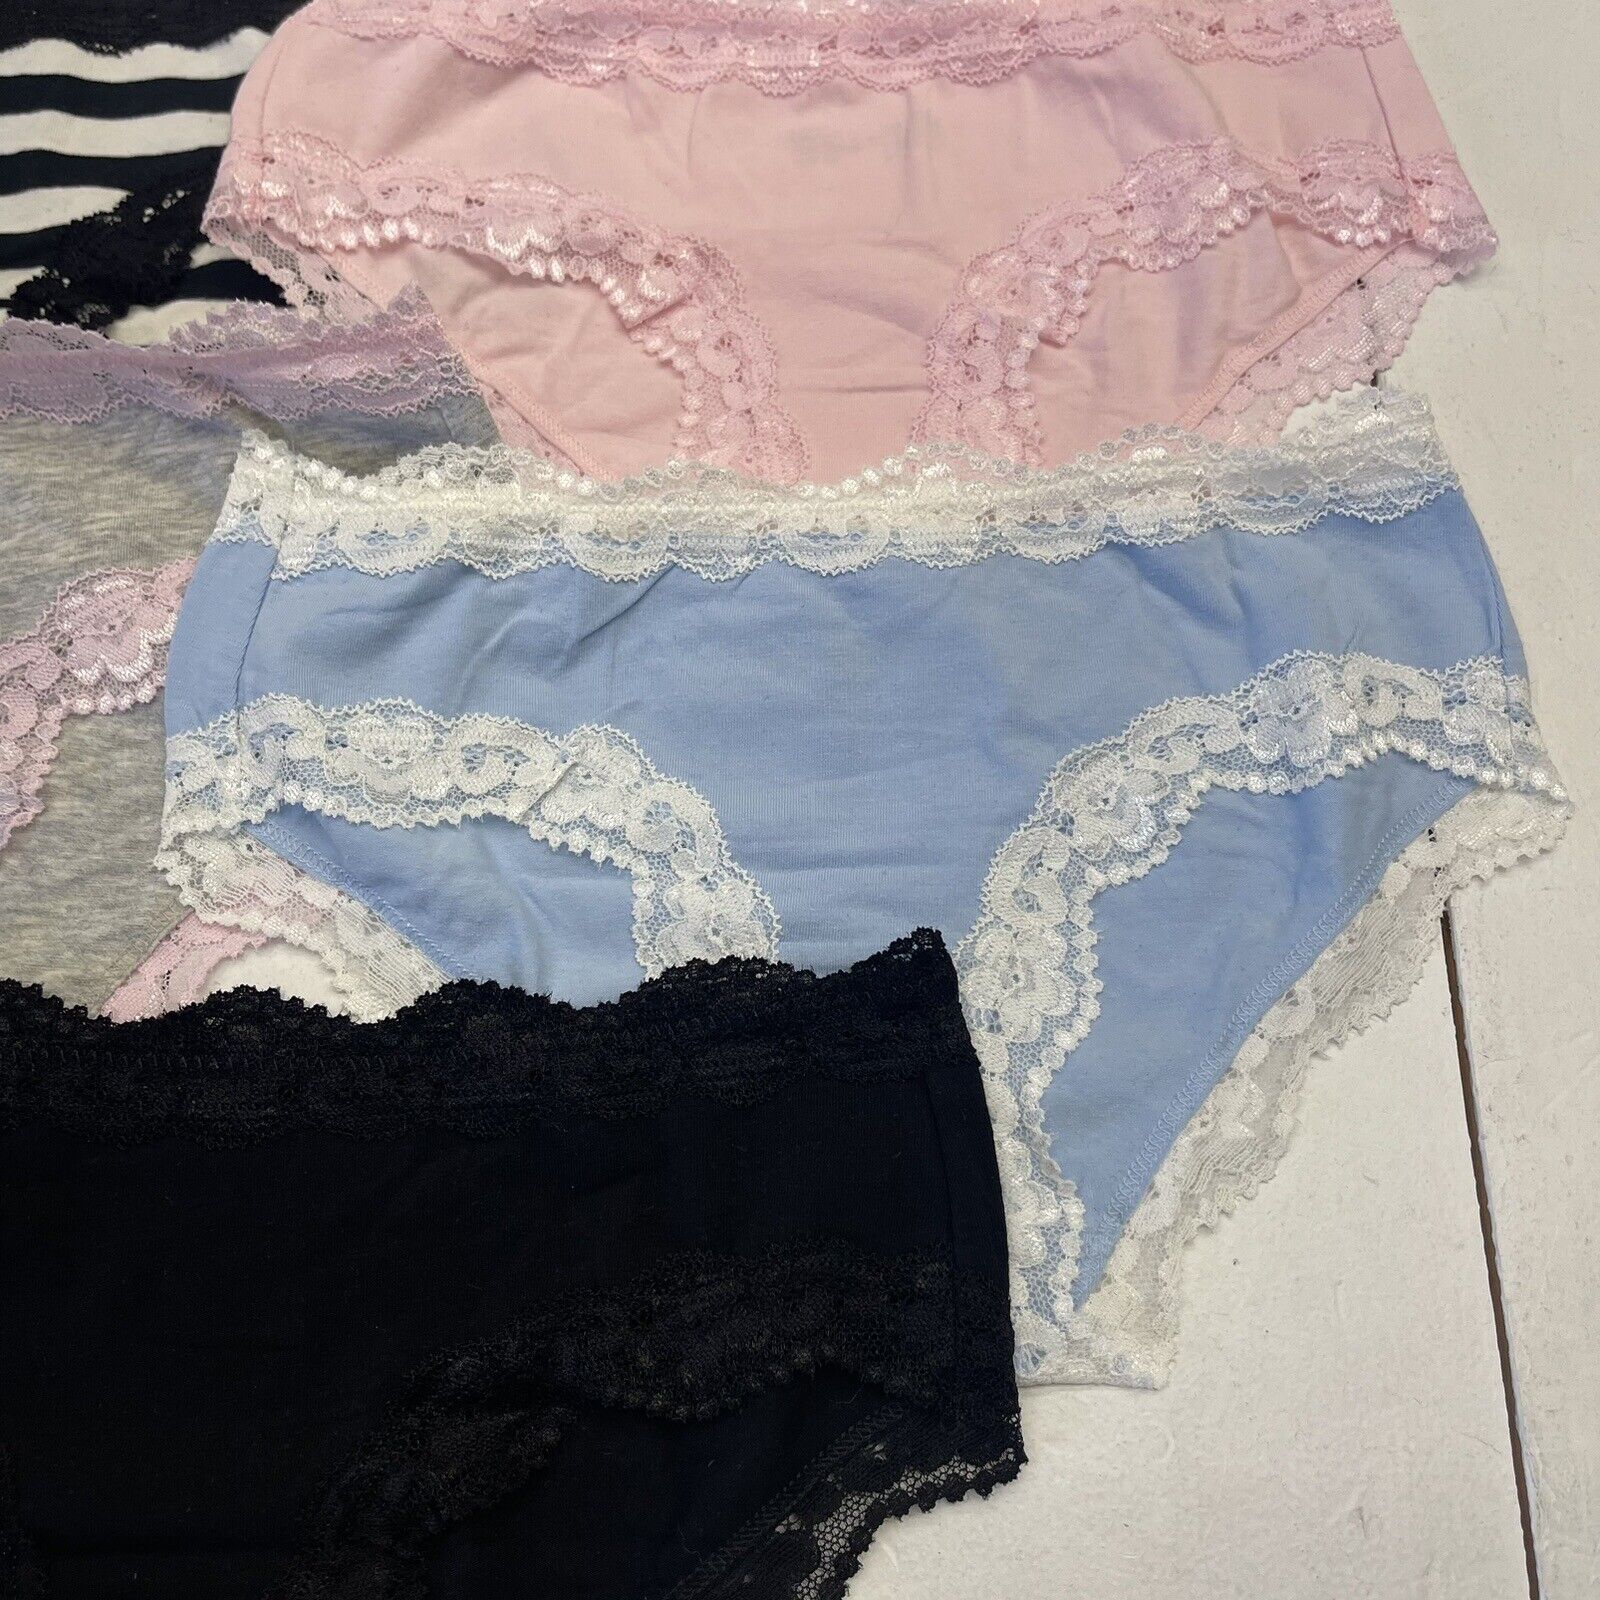 Lyythavon 5 Pack Lace Trim Underwear Women's Size Small - beyond exchange